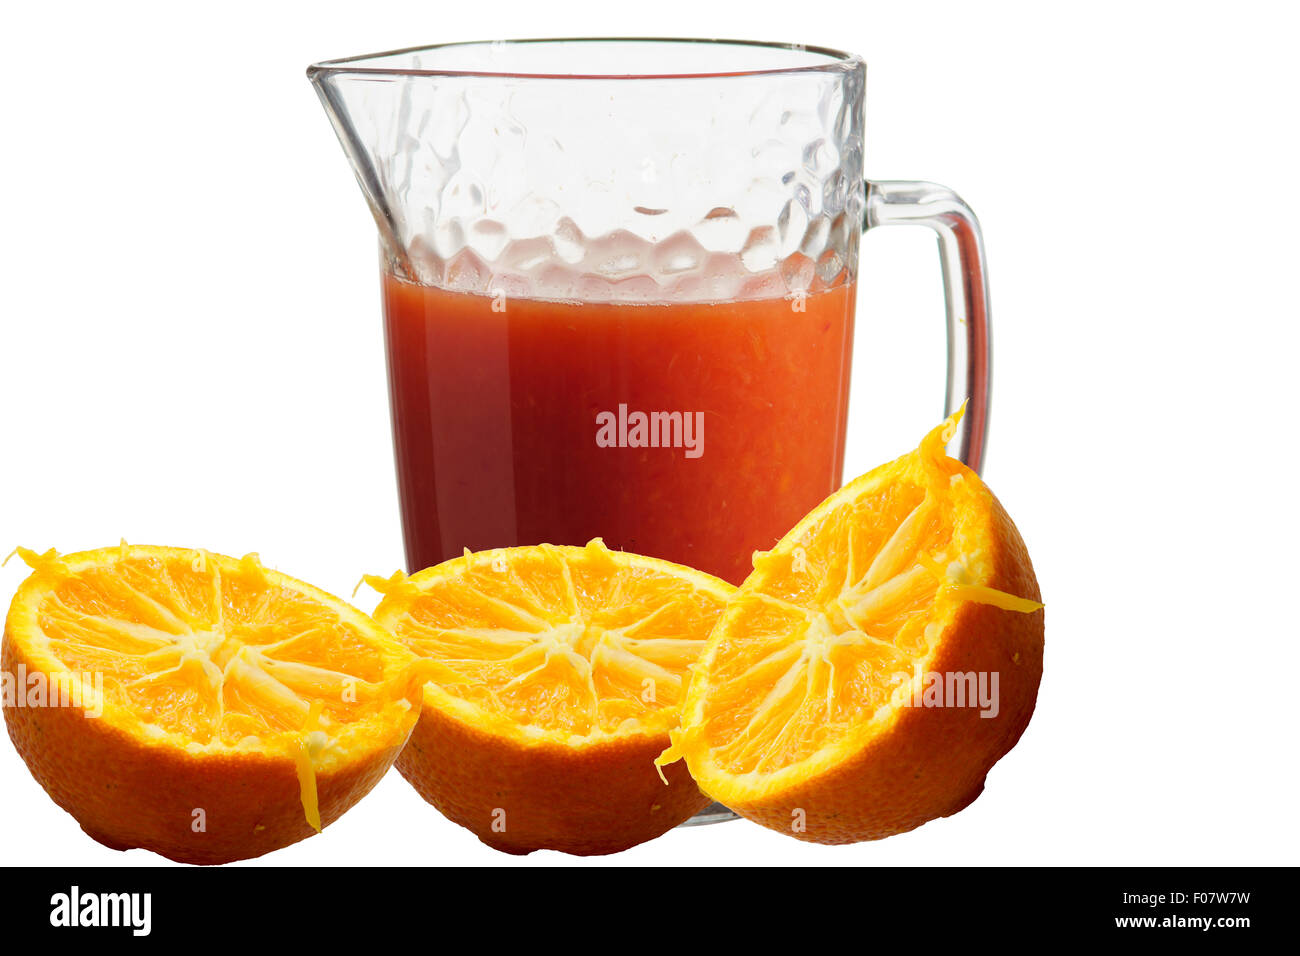 Zumo de naranja recién exprimido en una jarra de color blanco puro de fondo aislado Foto de stock